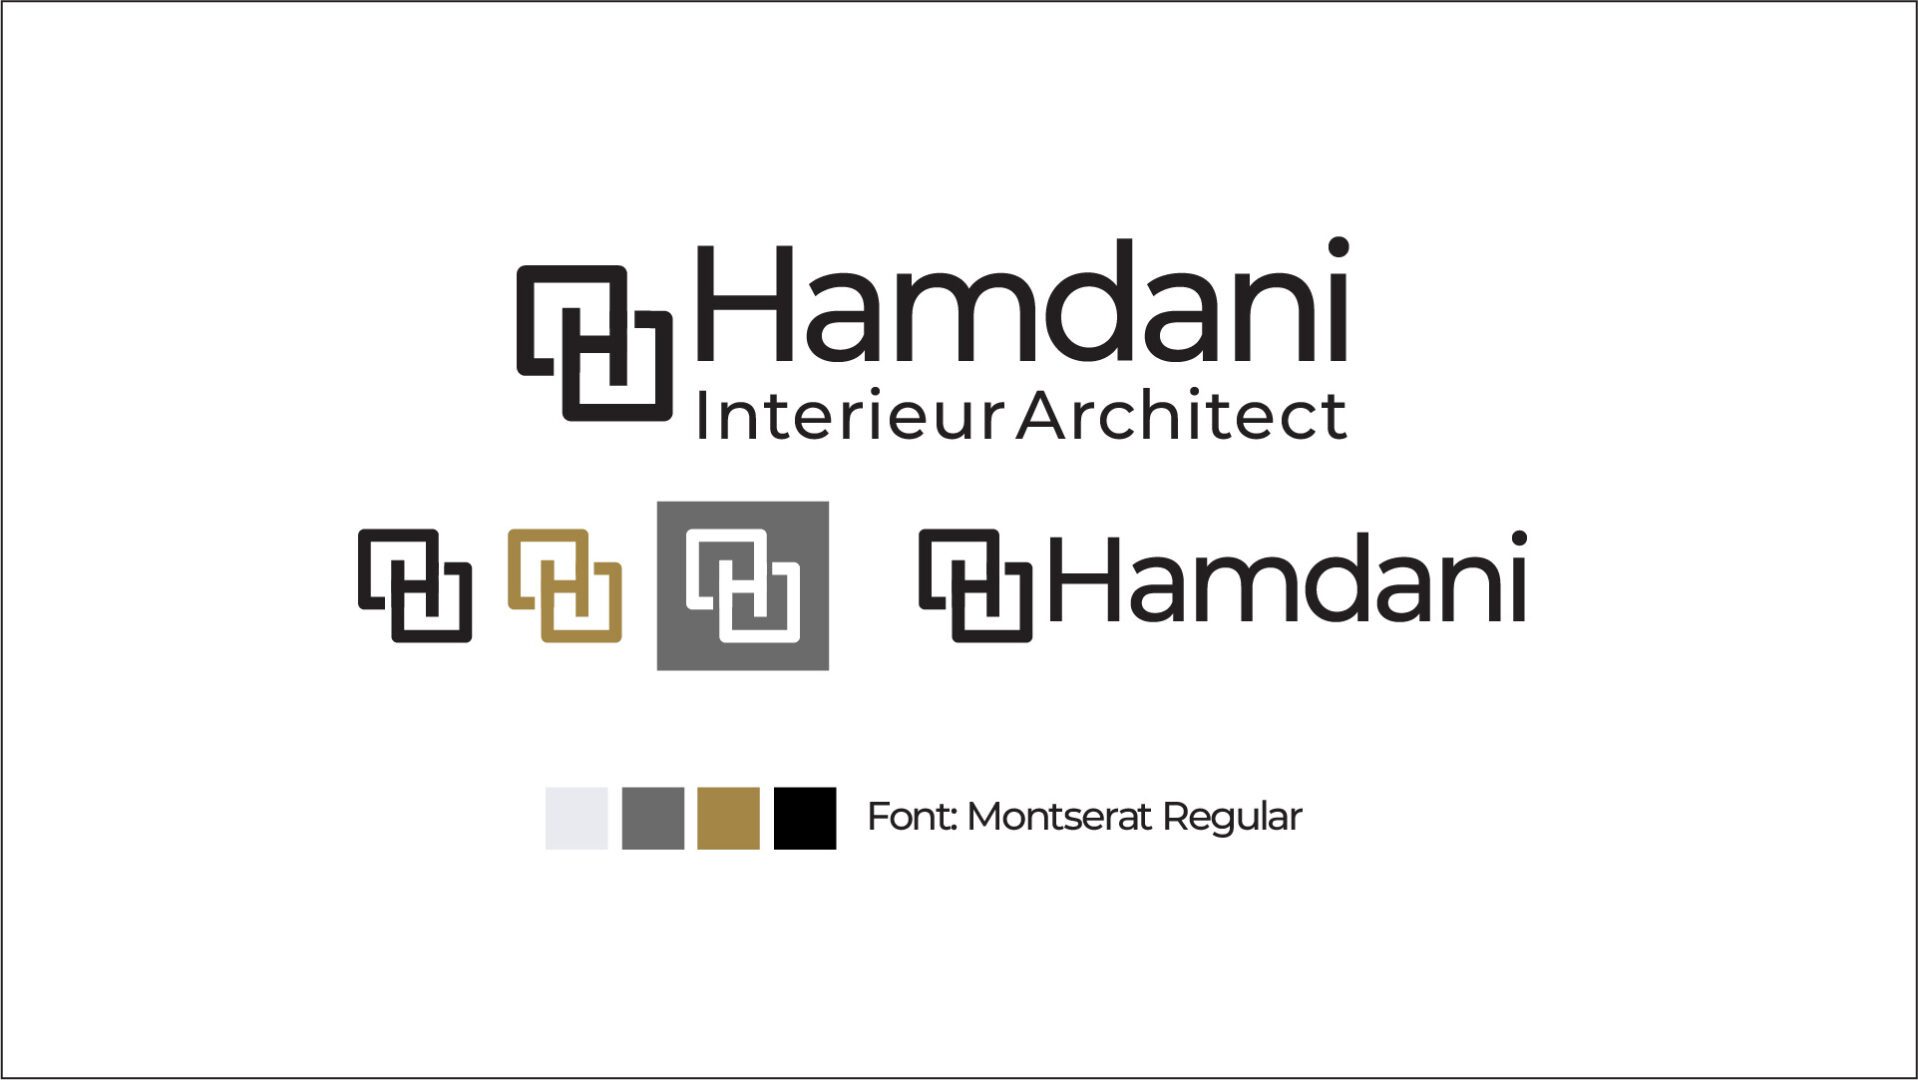 Hamdaniarchitecht.nl logo